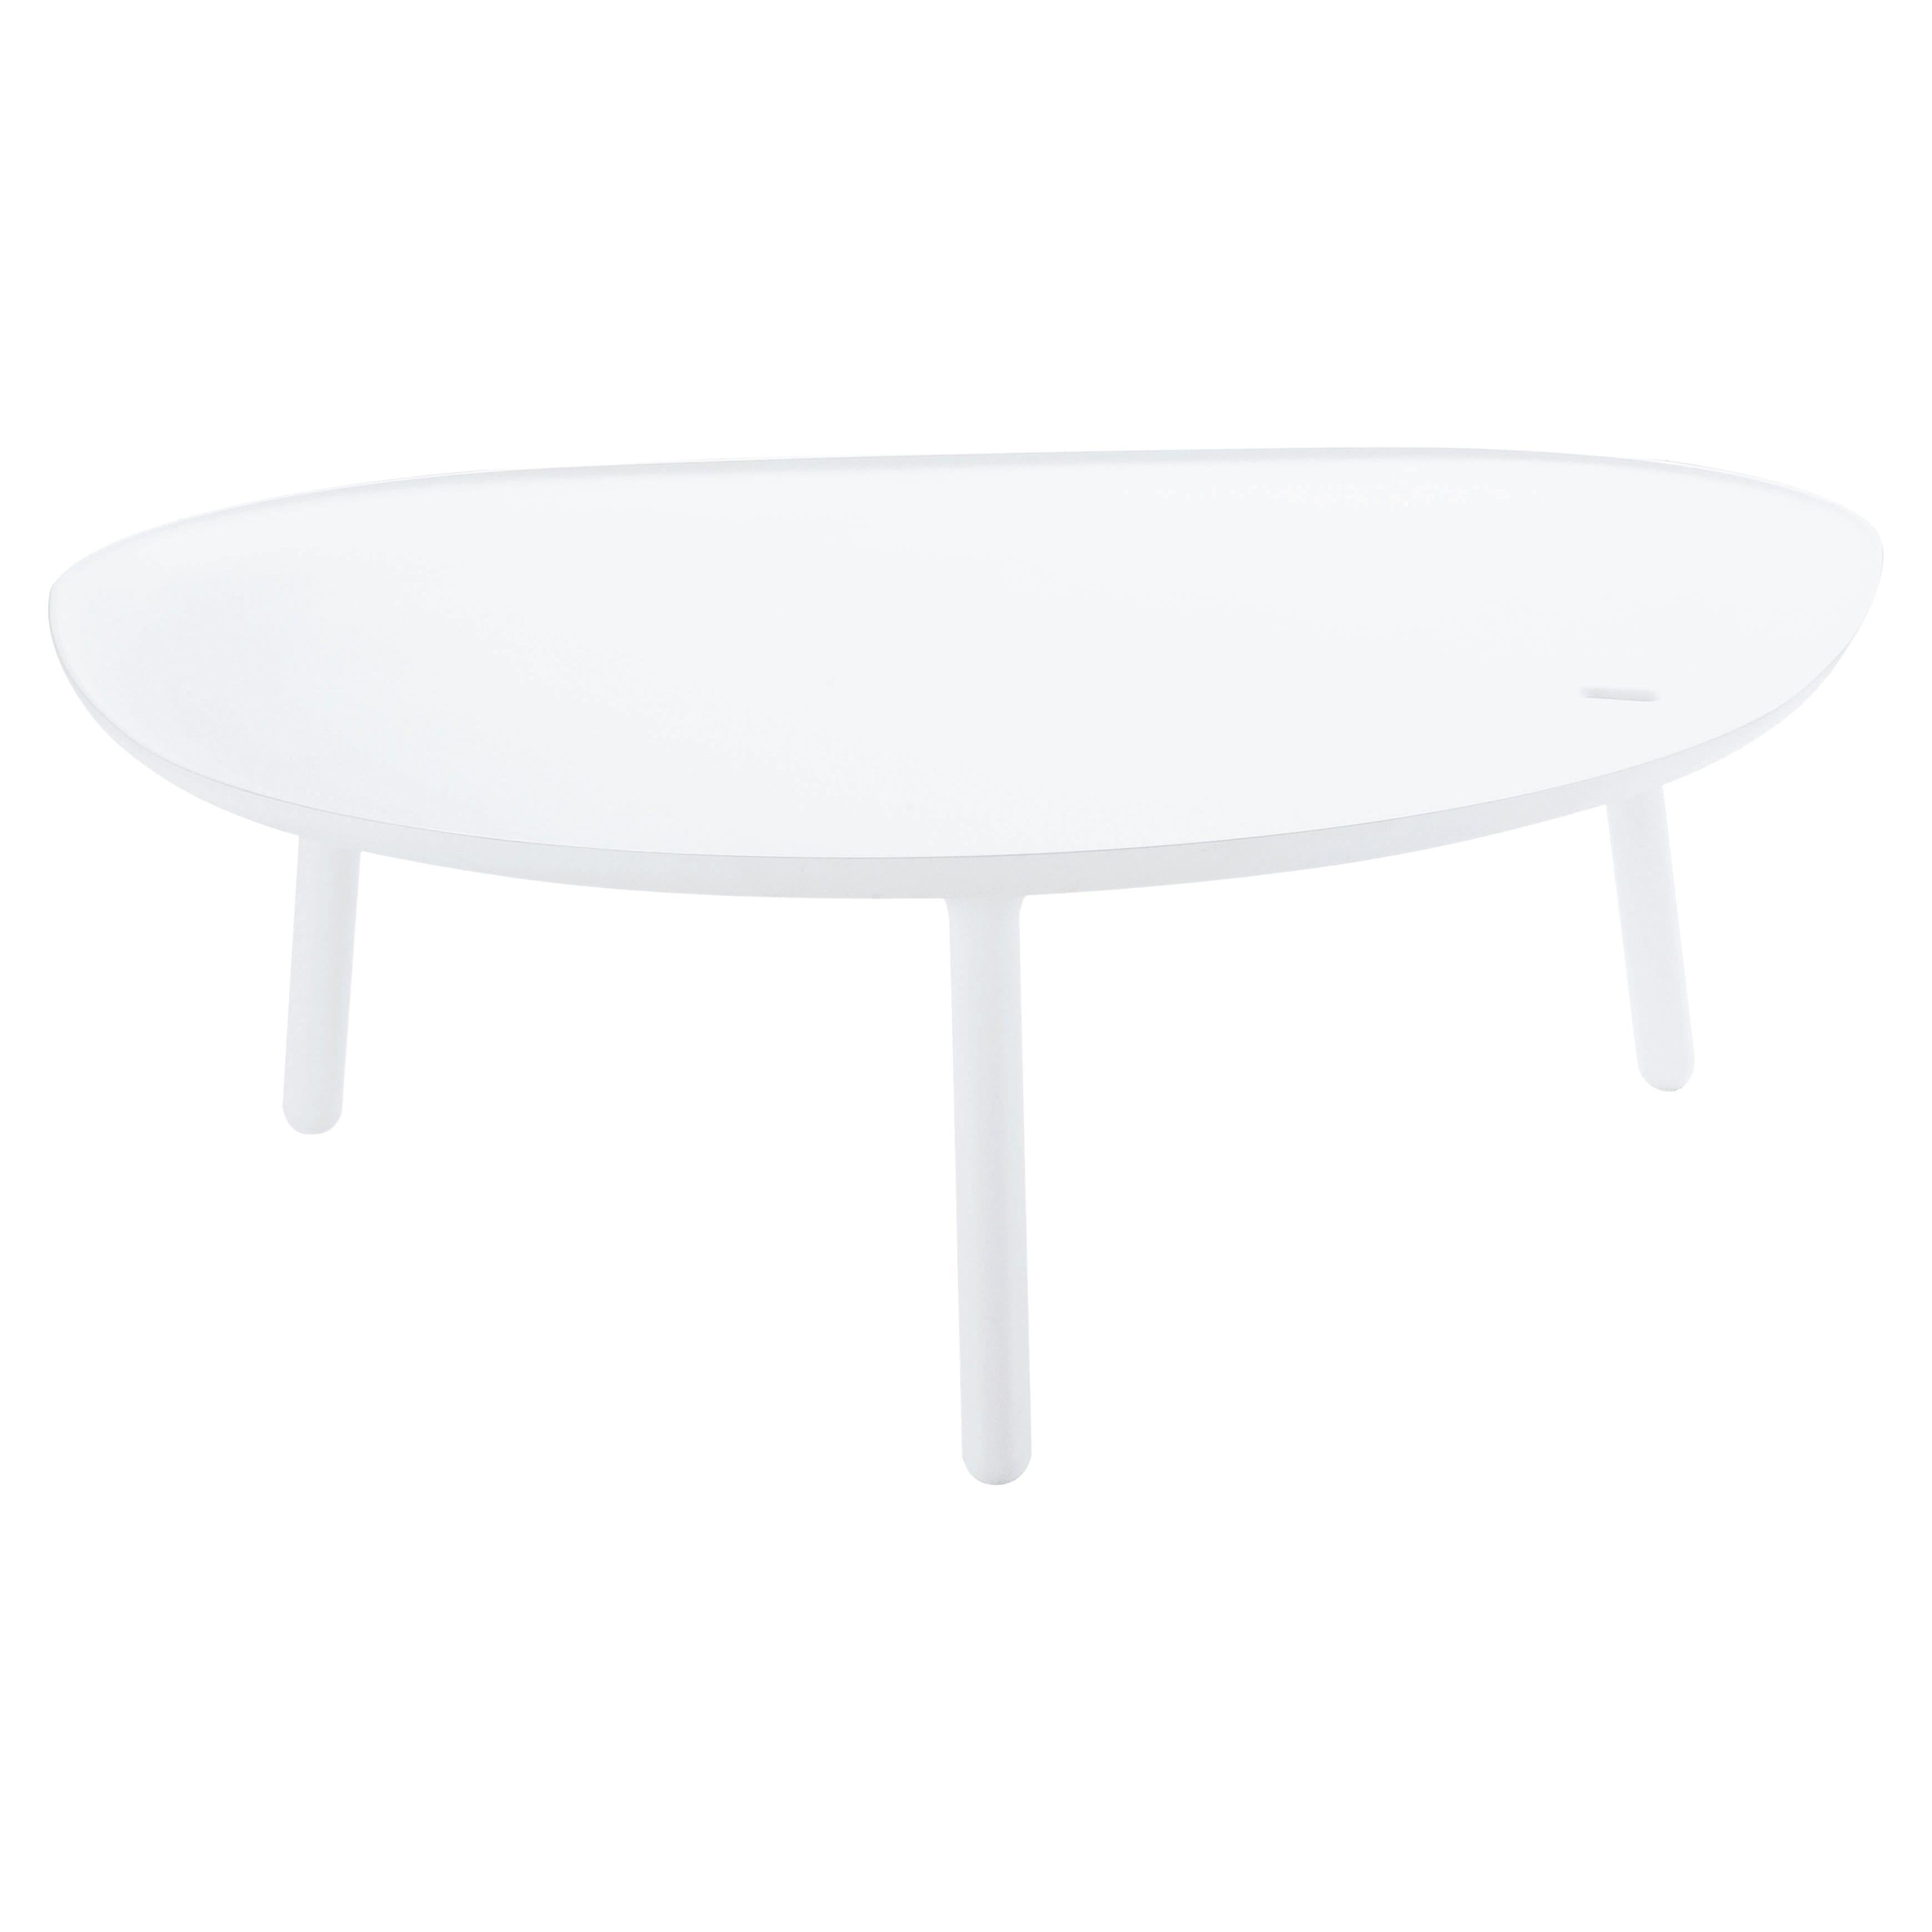 Zanotta Ninfea Small Table in White Acrylic Resin by Ludovica+Roberto Palomba